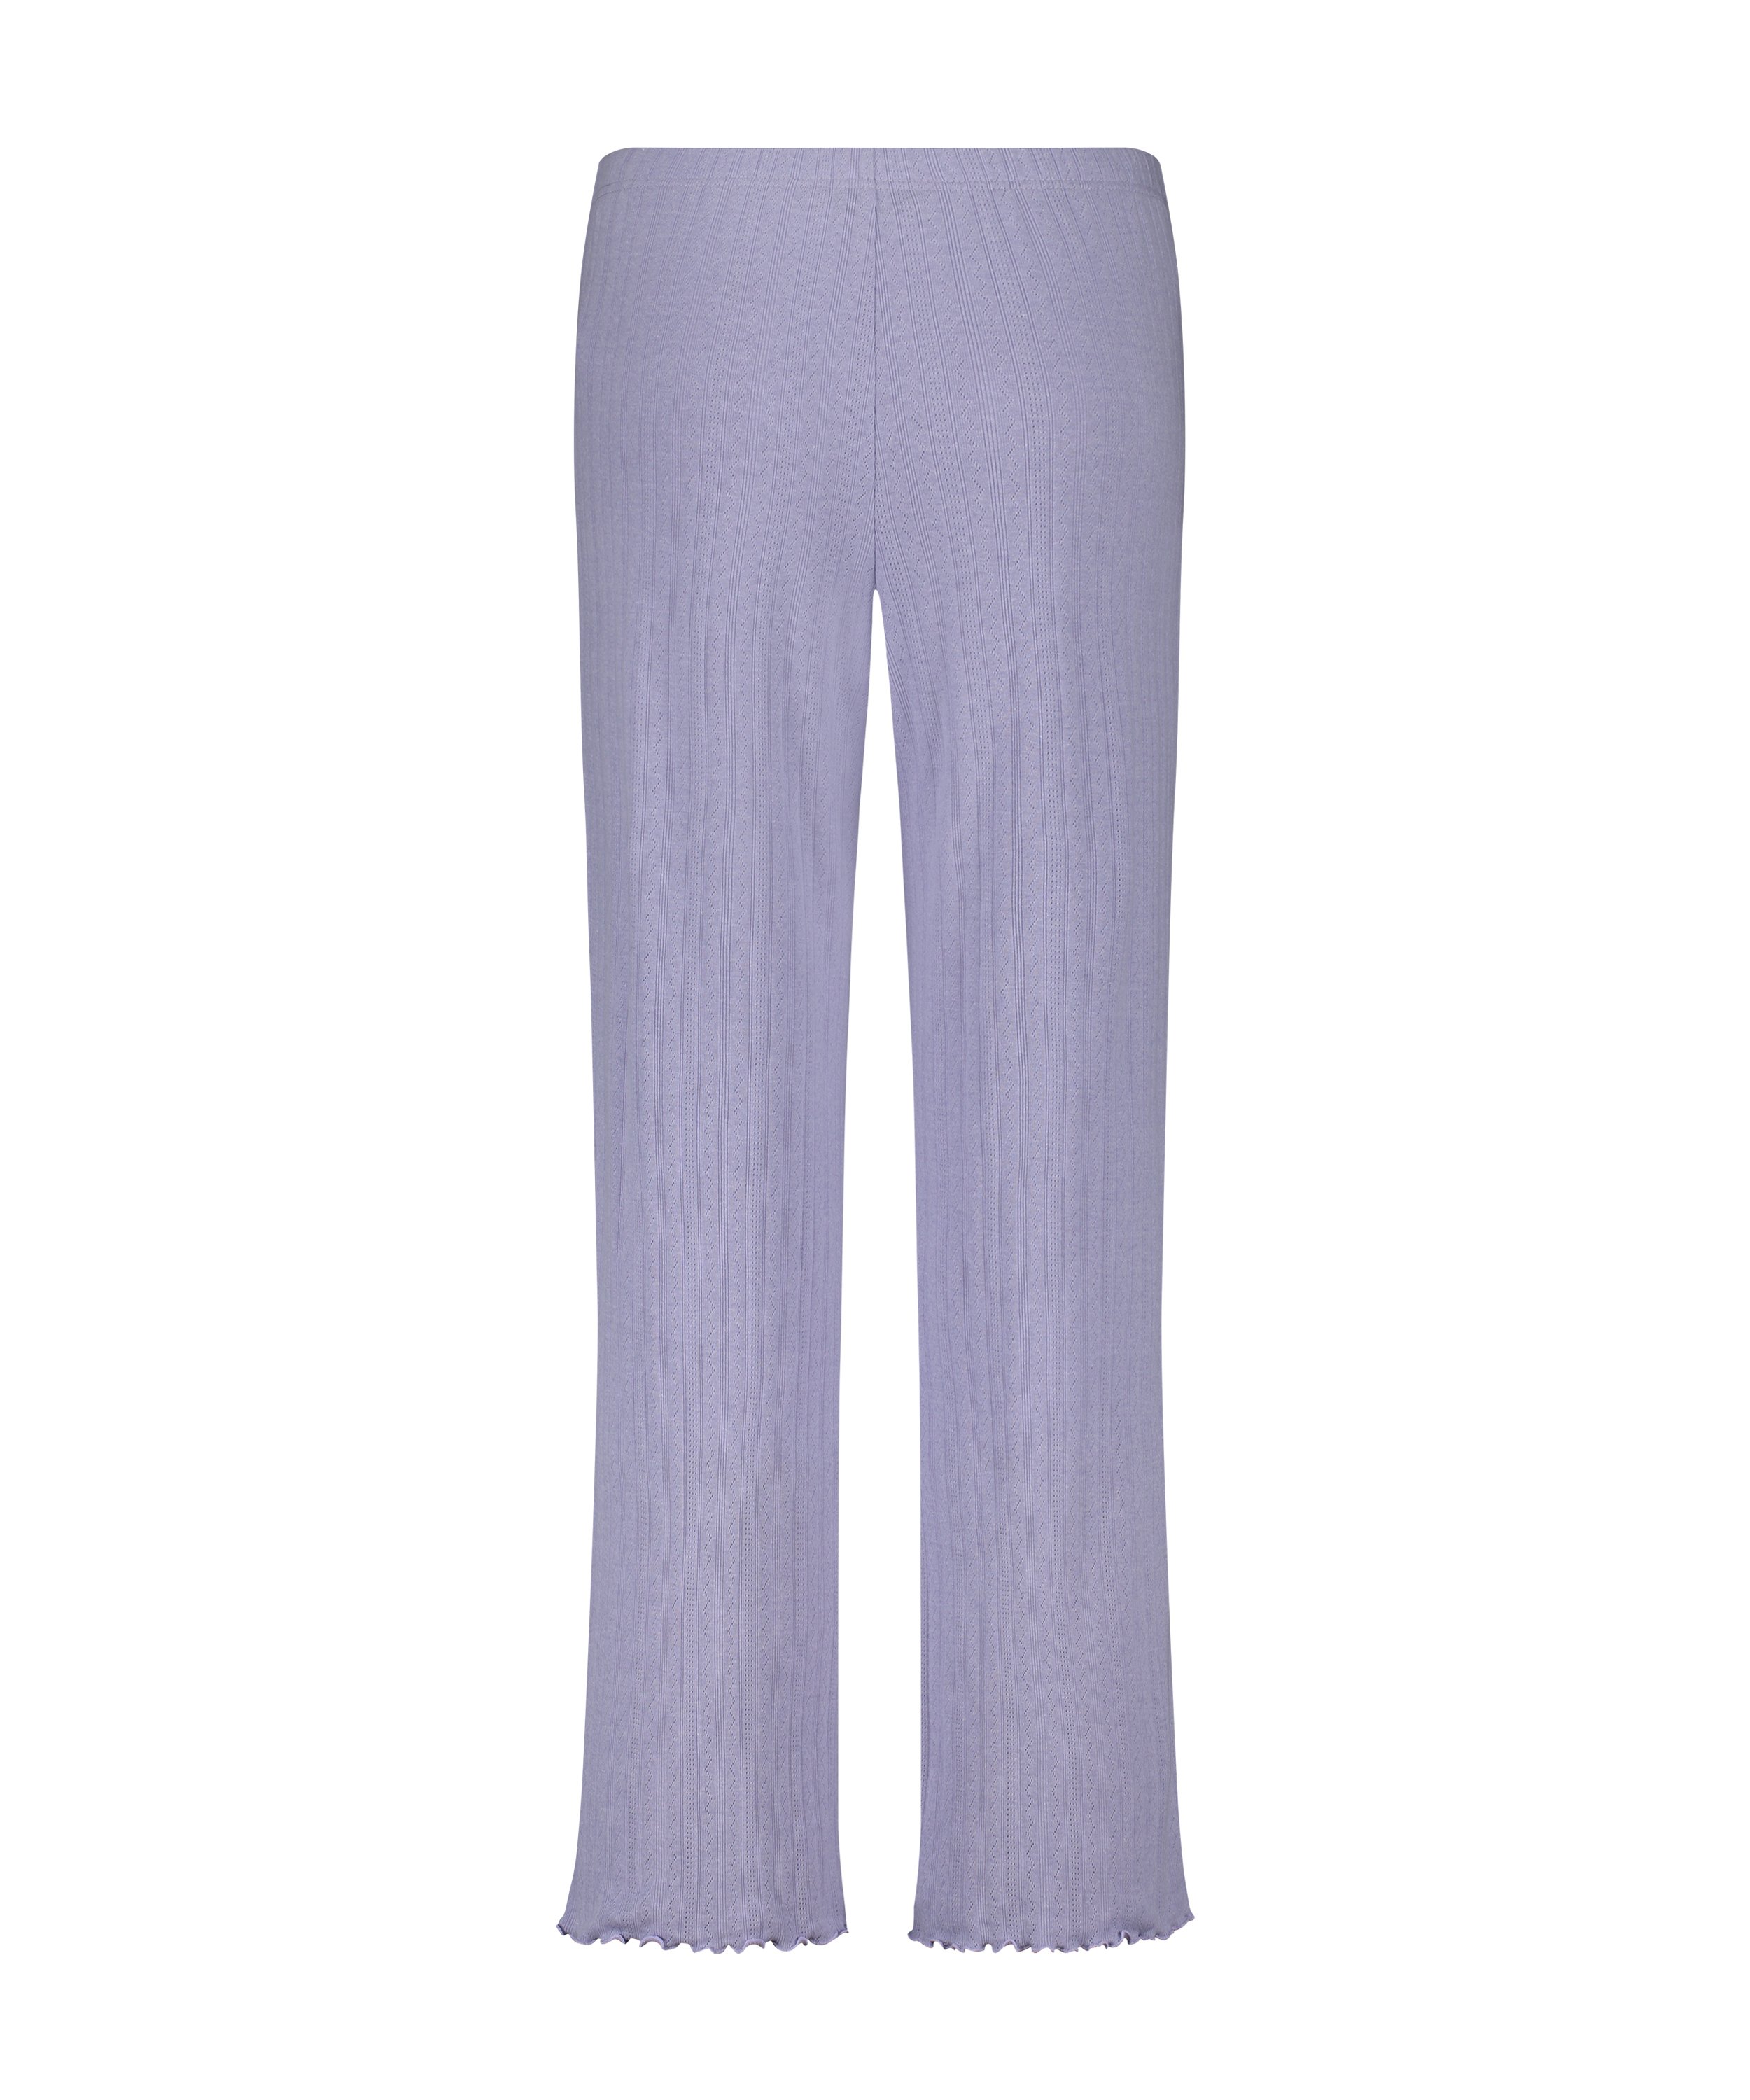 Spodnie piżamowe Pointelle, Fioletowy, main